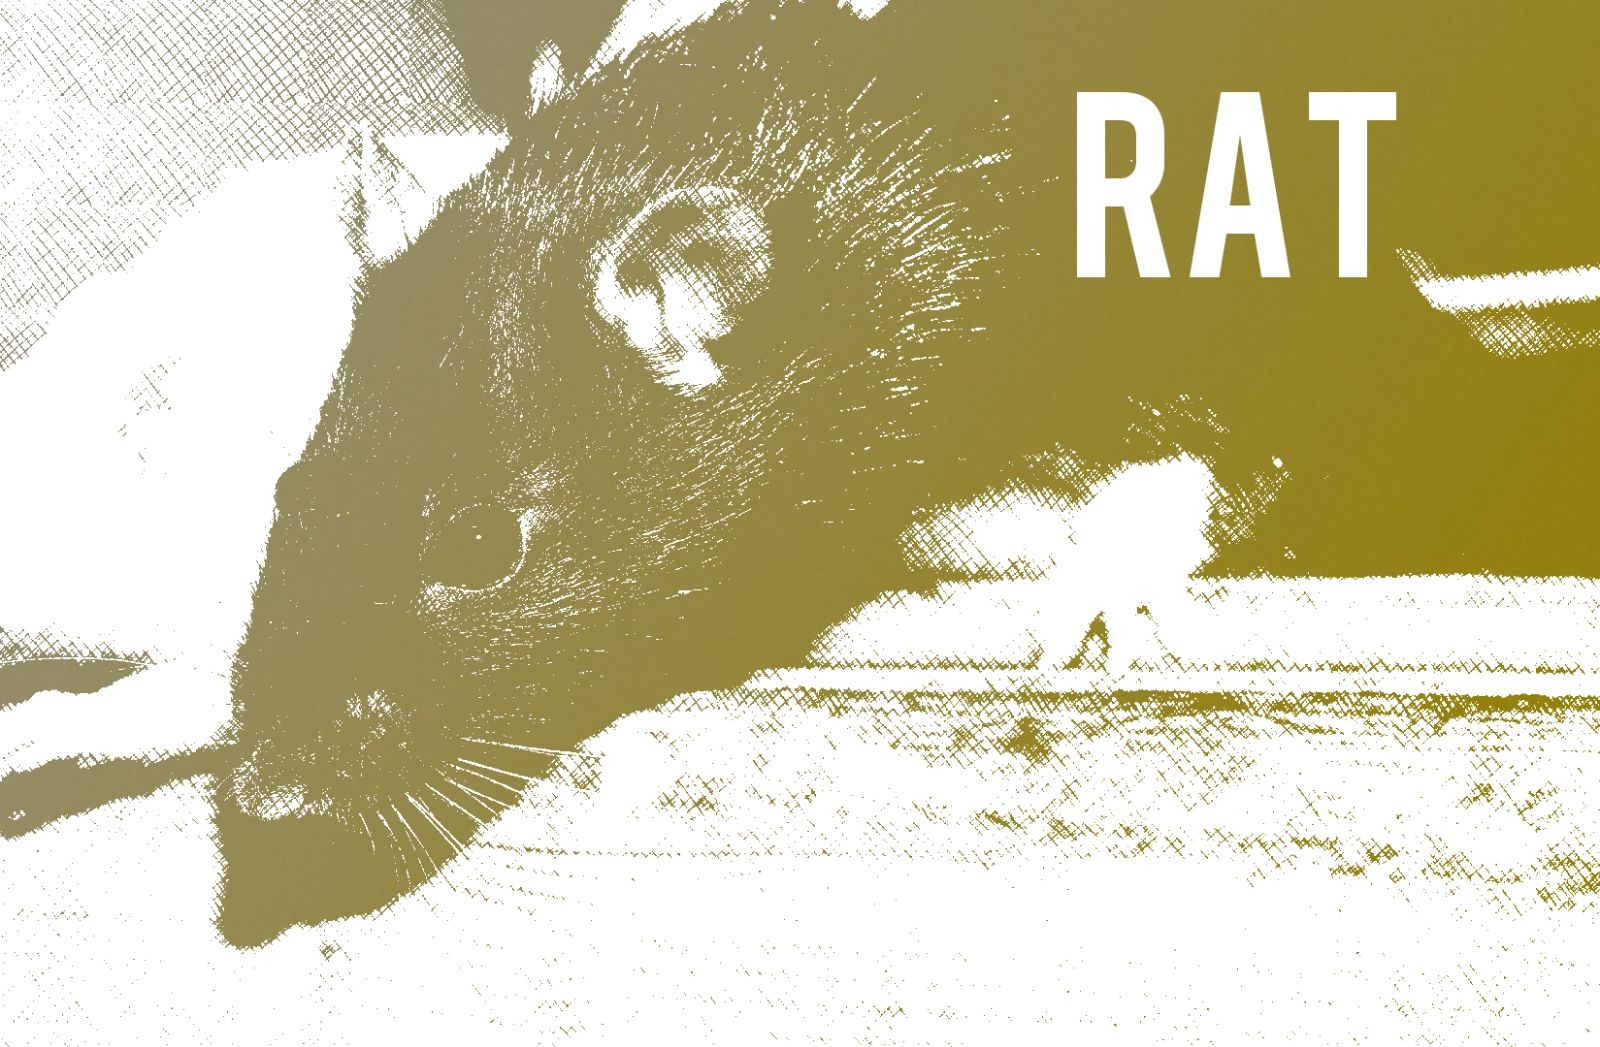 rat-2103087_1920.jpg